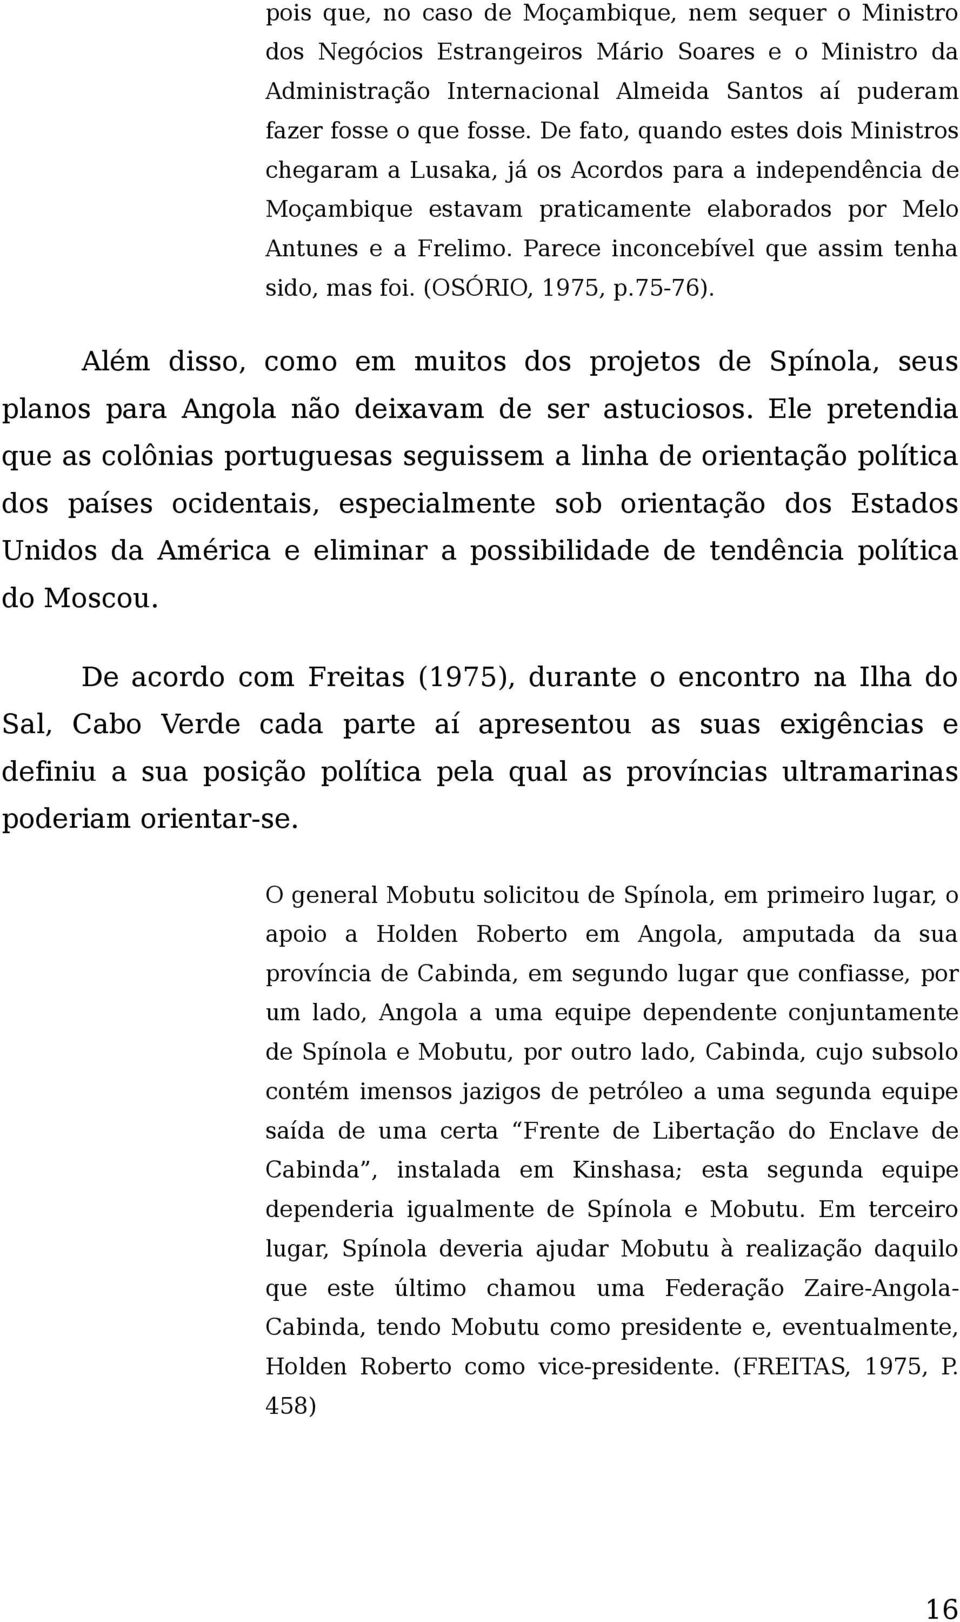 Parece inconcebível que assim tenha sido, mas foi. (OSÓRIO, 1975, p.75-76). Além disso, como em muitos dos projetos de Spínola, seus planos para Angola não deixavam de ser astuciosos.